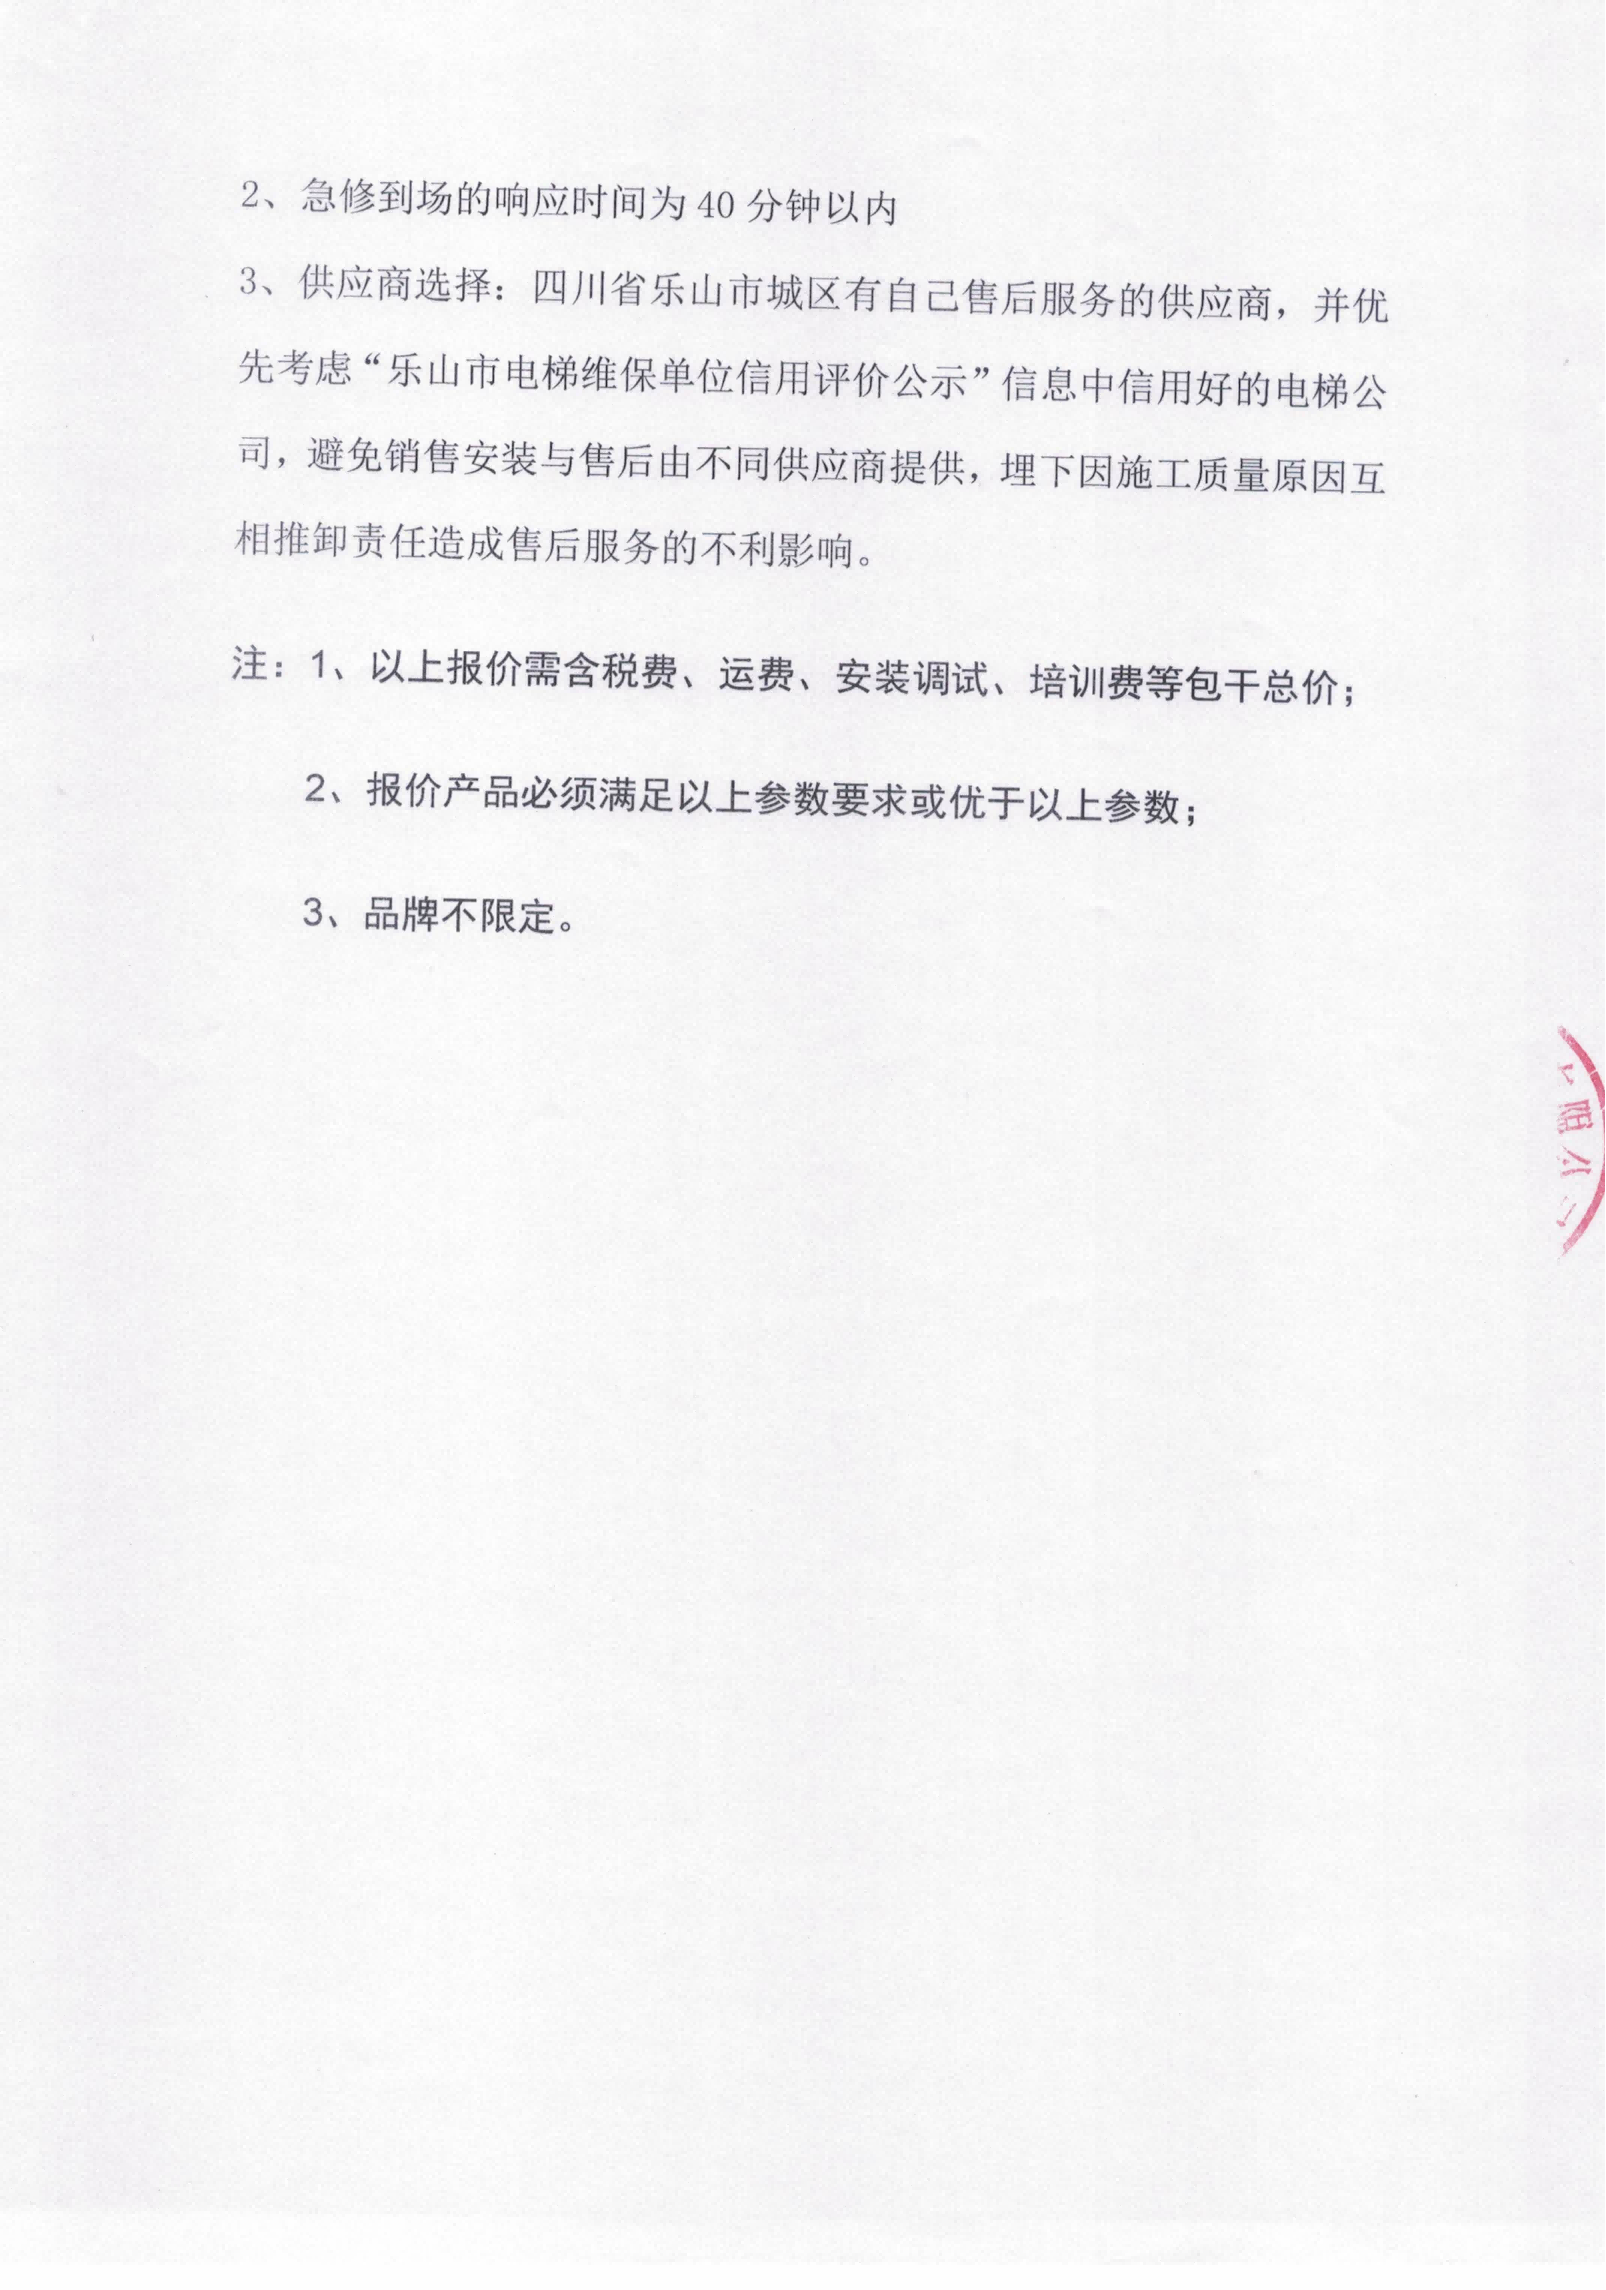 四川兴事达教育投资有限公司关于食堂电梯项目的竞标公告_05.png